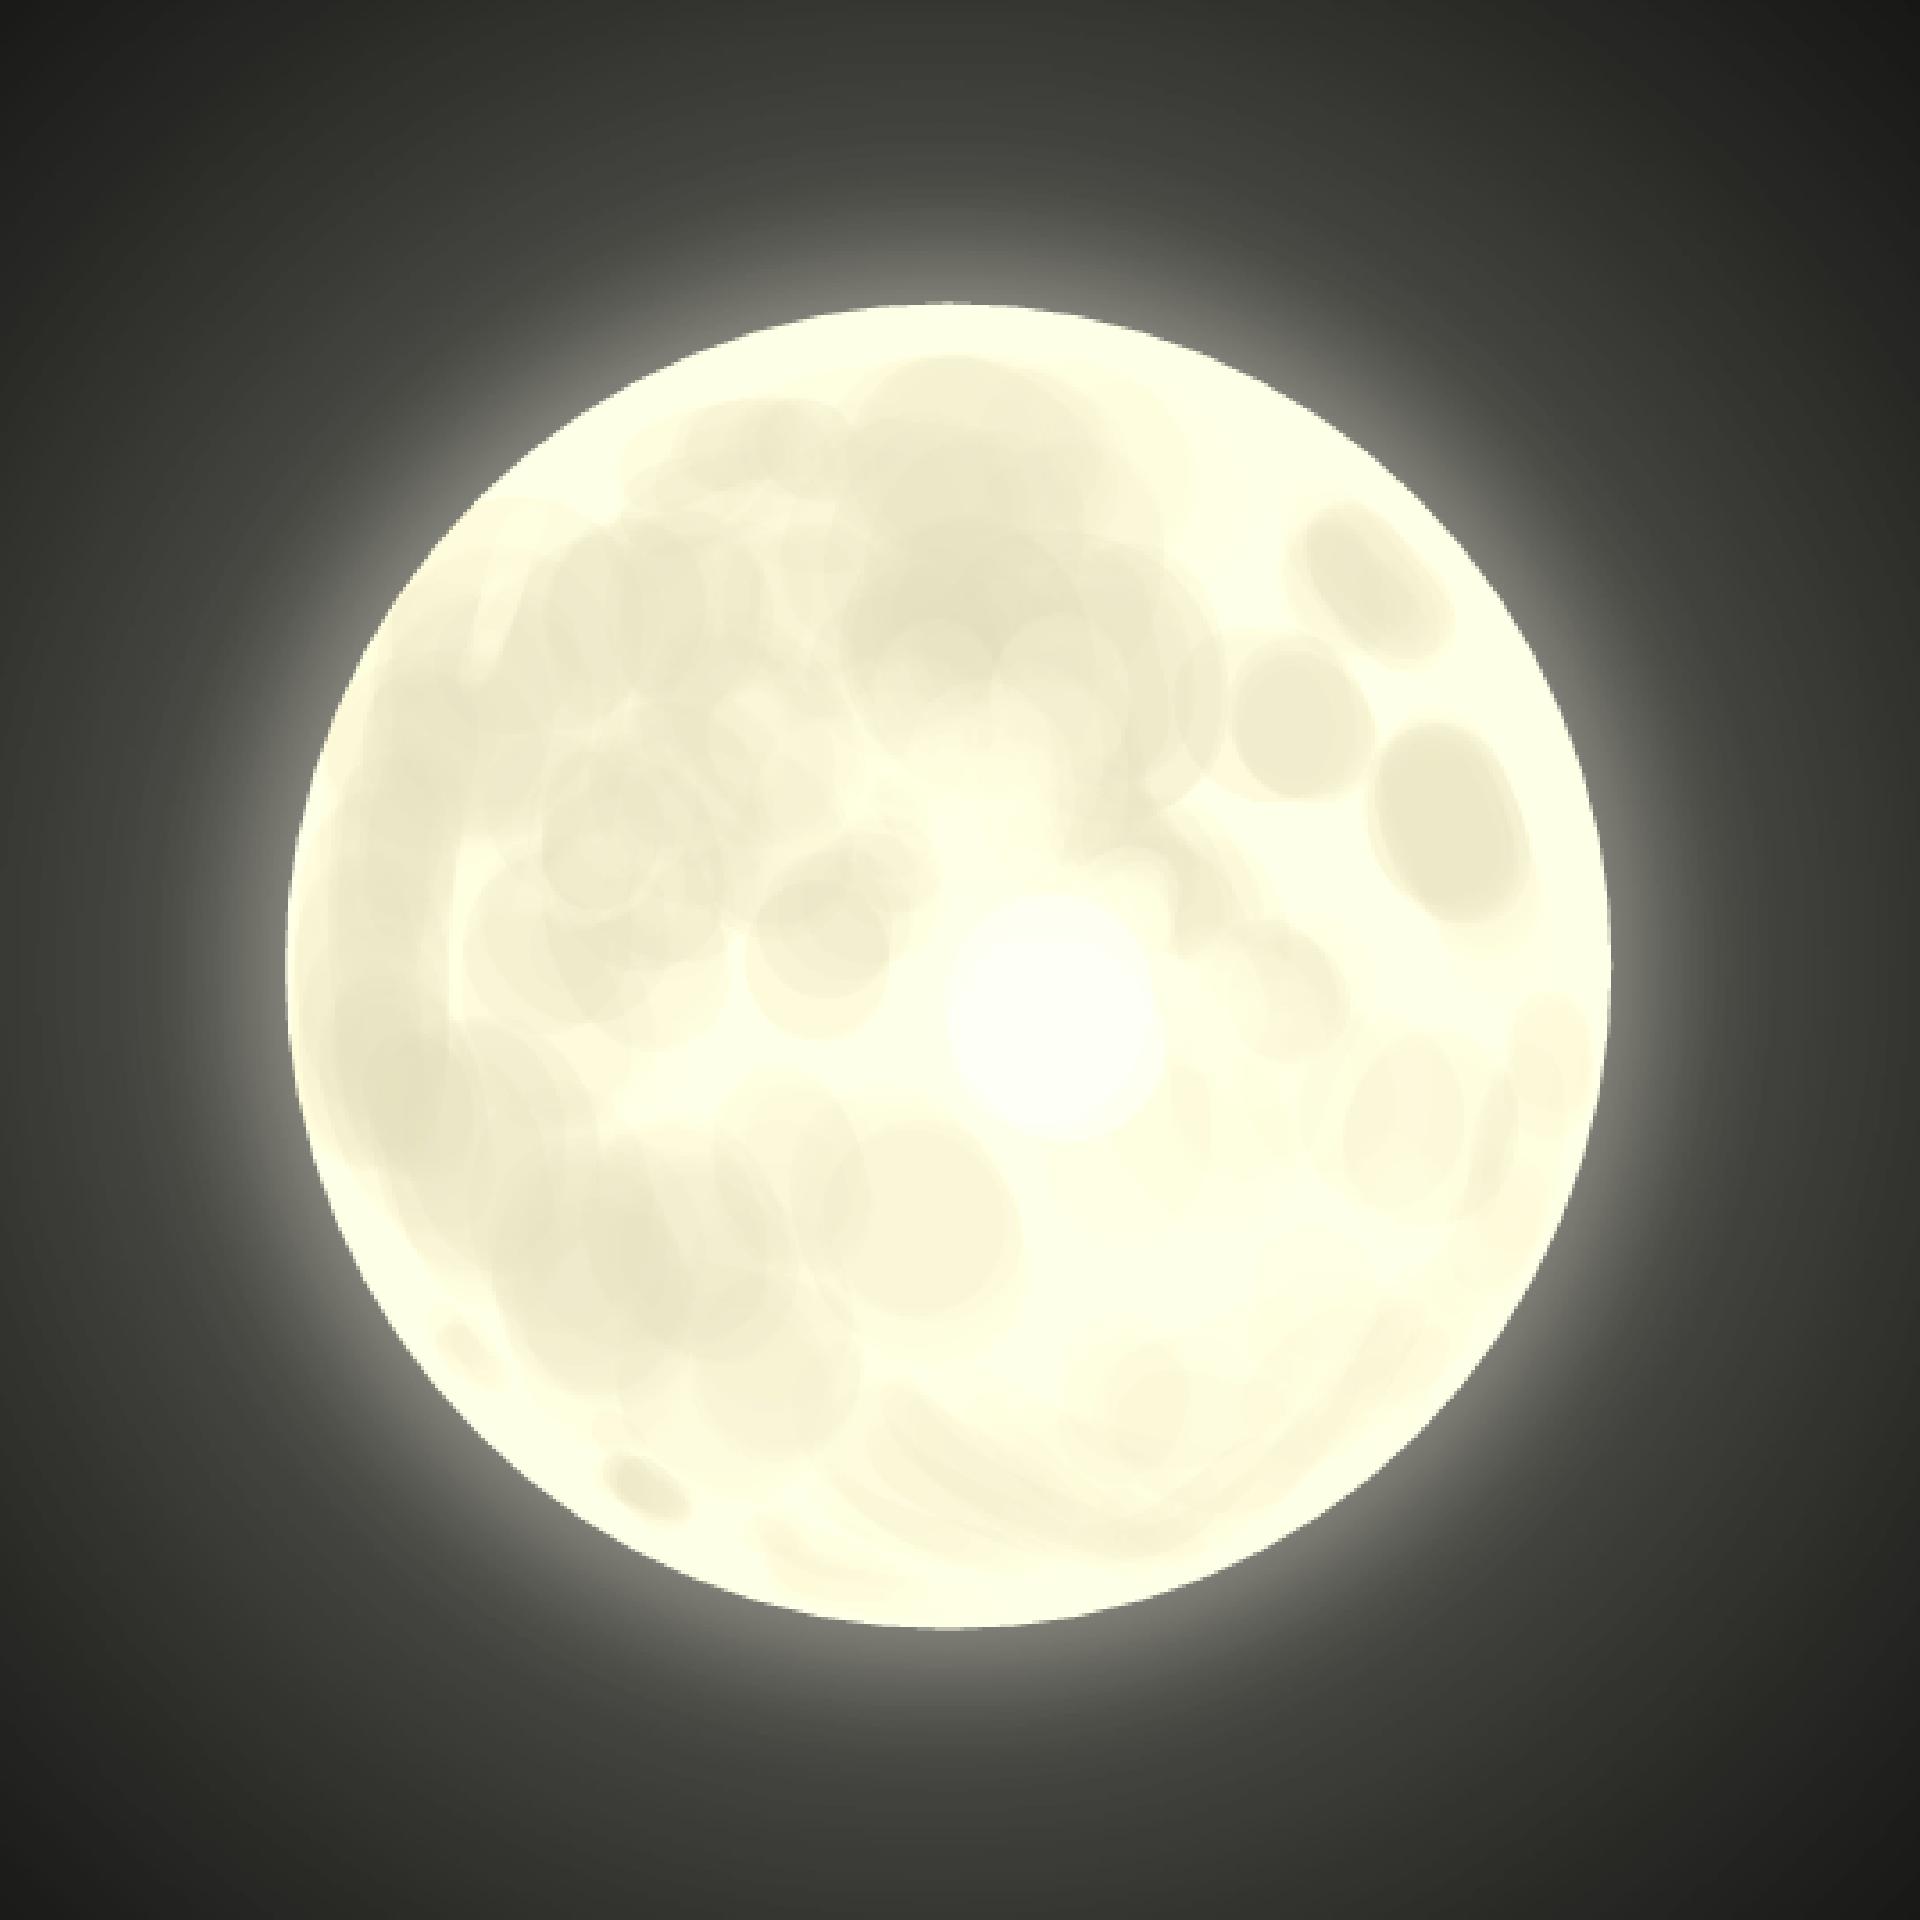 Луна светила из круглой. Луна. Светящаяся Луна. Прозрачная Луна. Луна круглая.